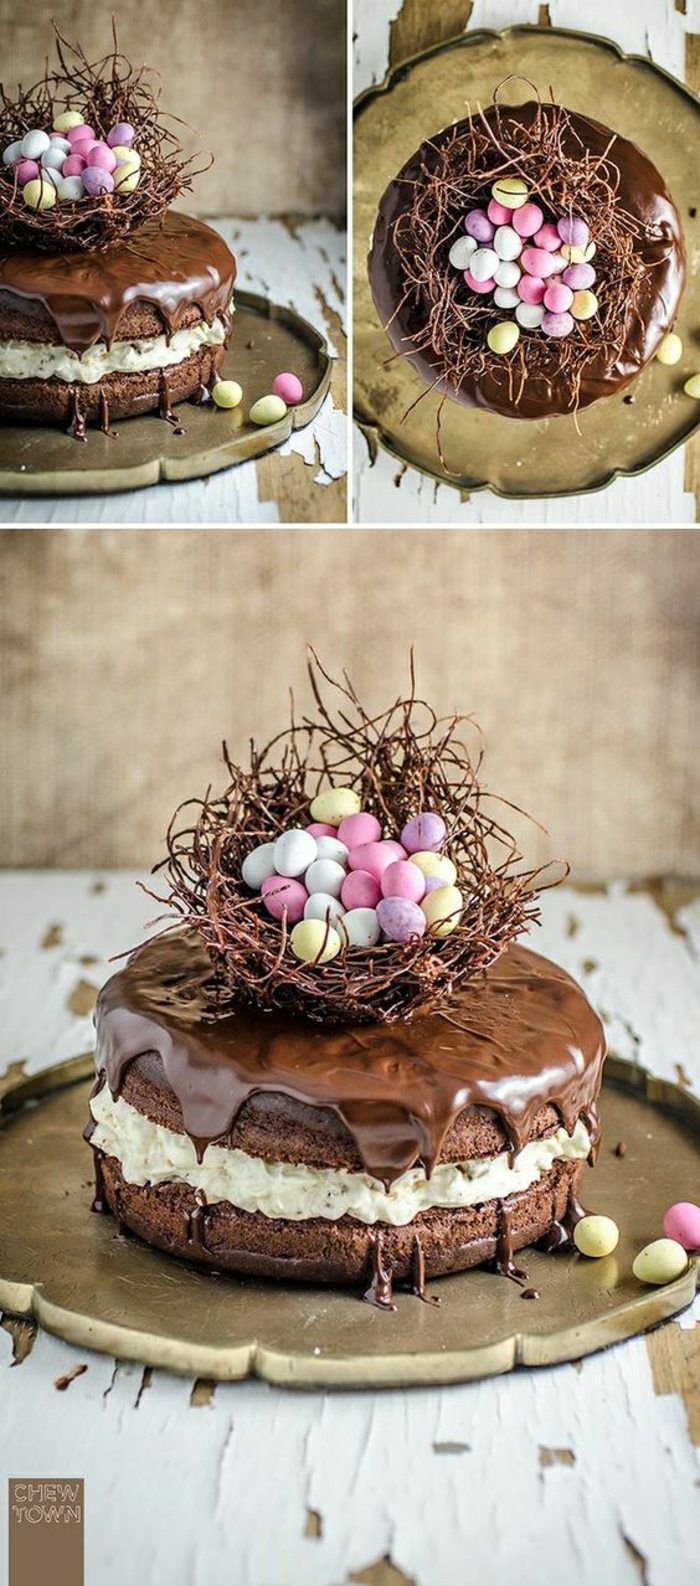 Schoko Torte mit Oster Motiv Osternest mit kleinen bunten Eiern